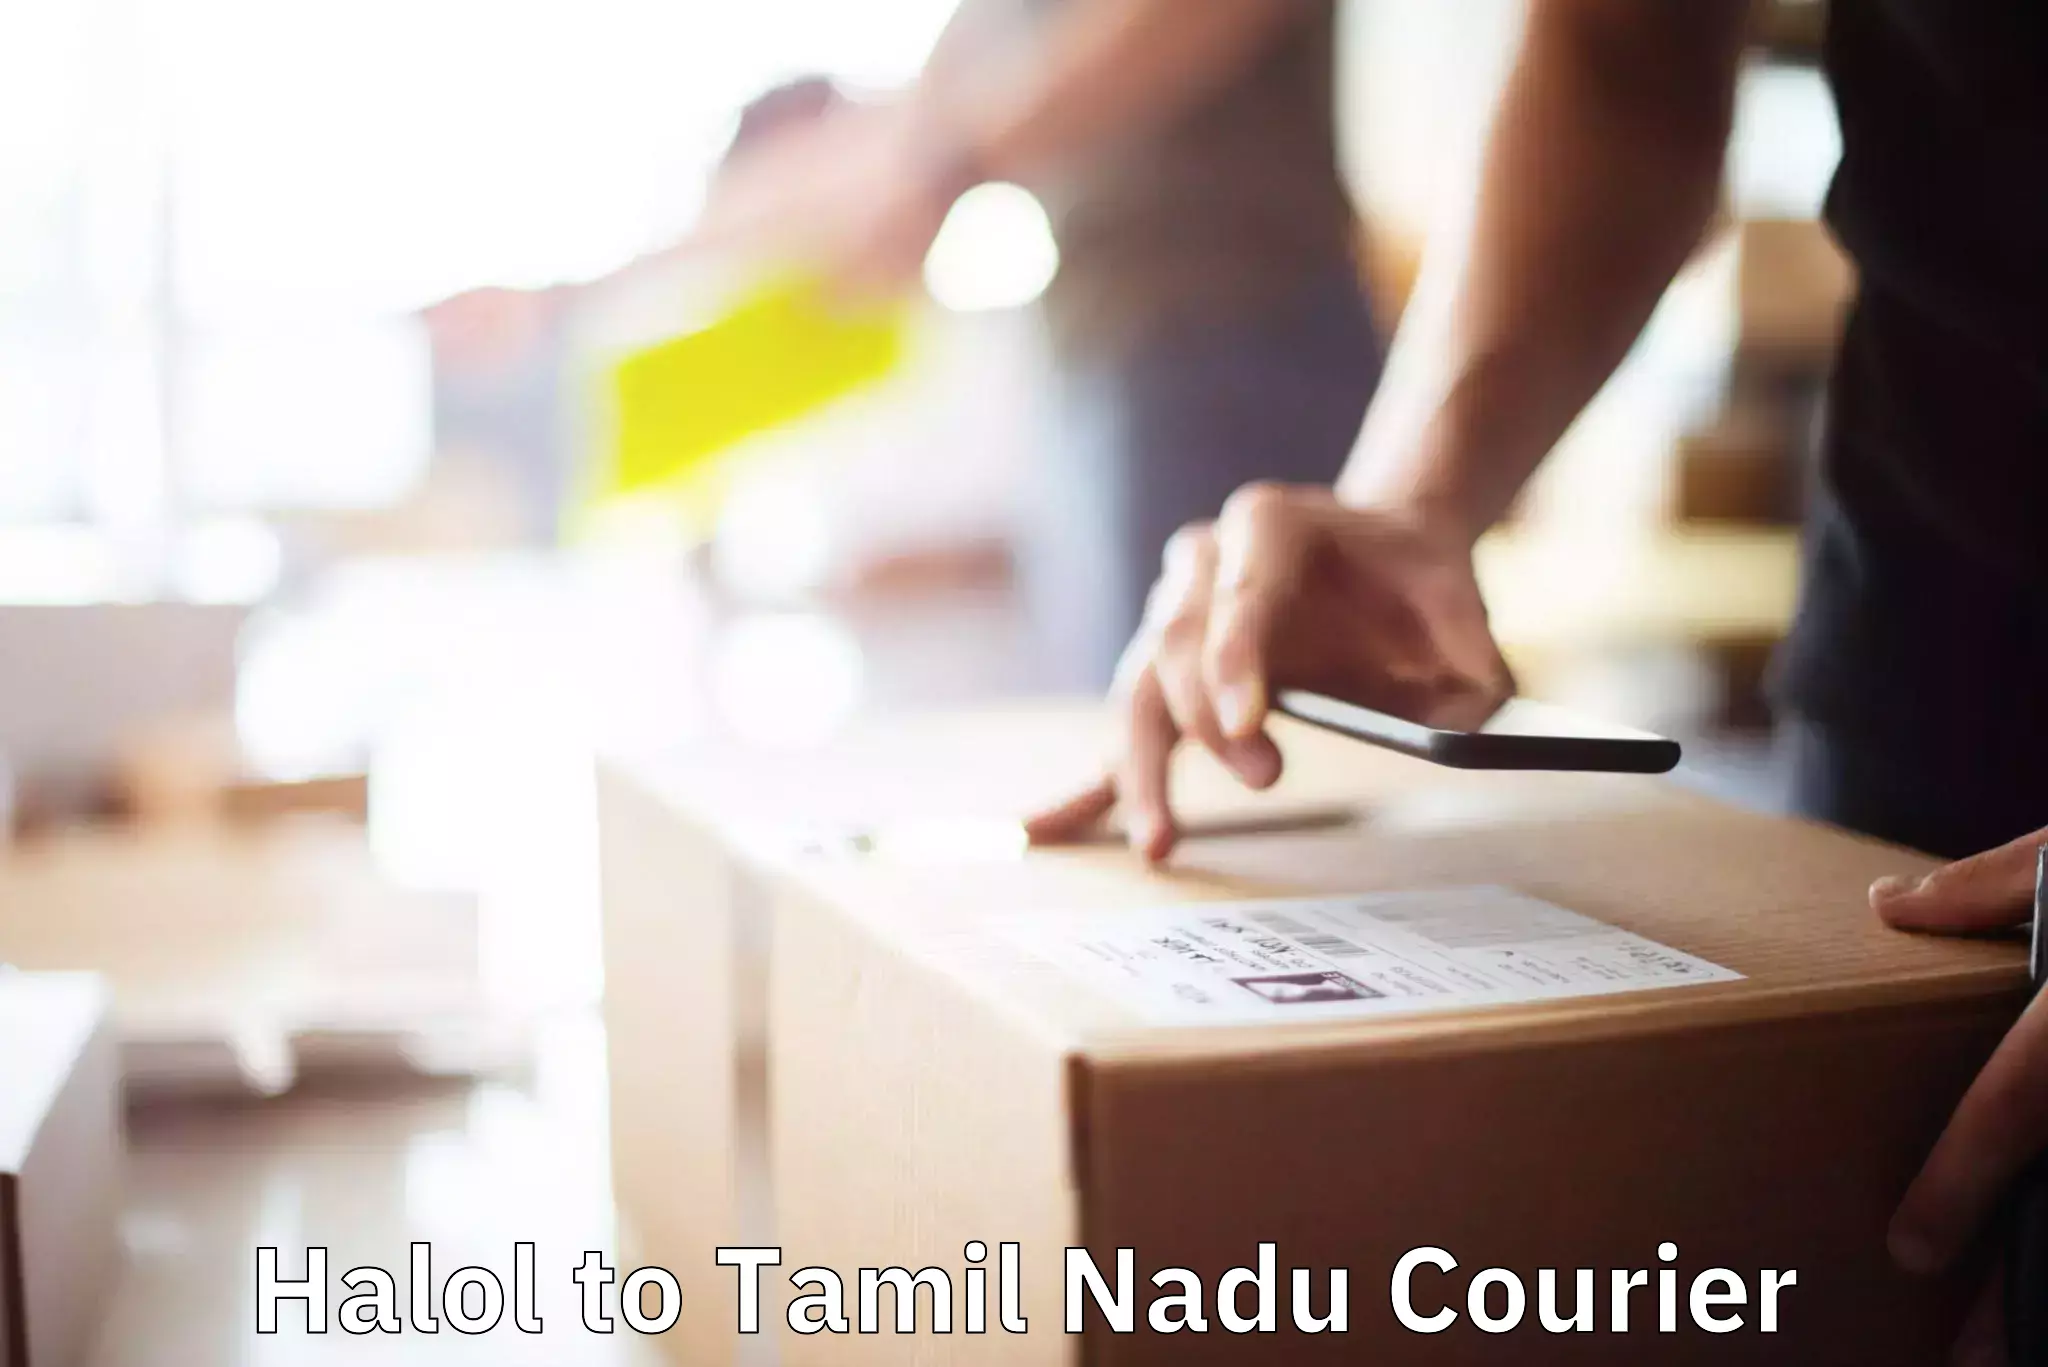 Furniture moving experts Halol to Thiruthuraipoondi